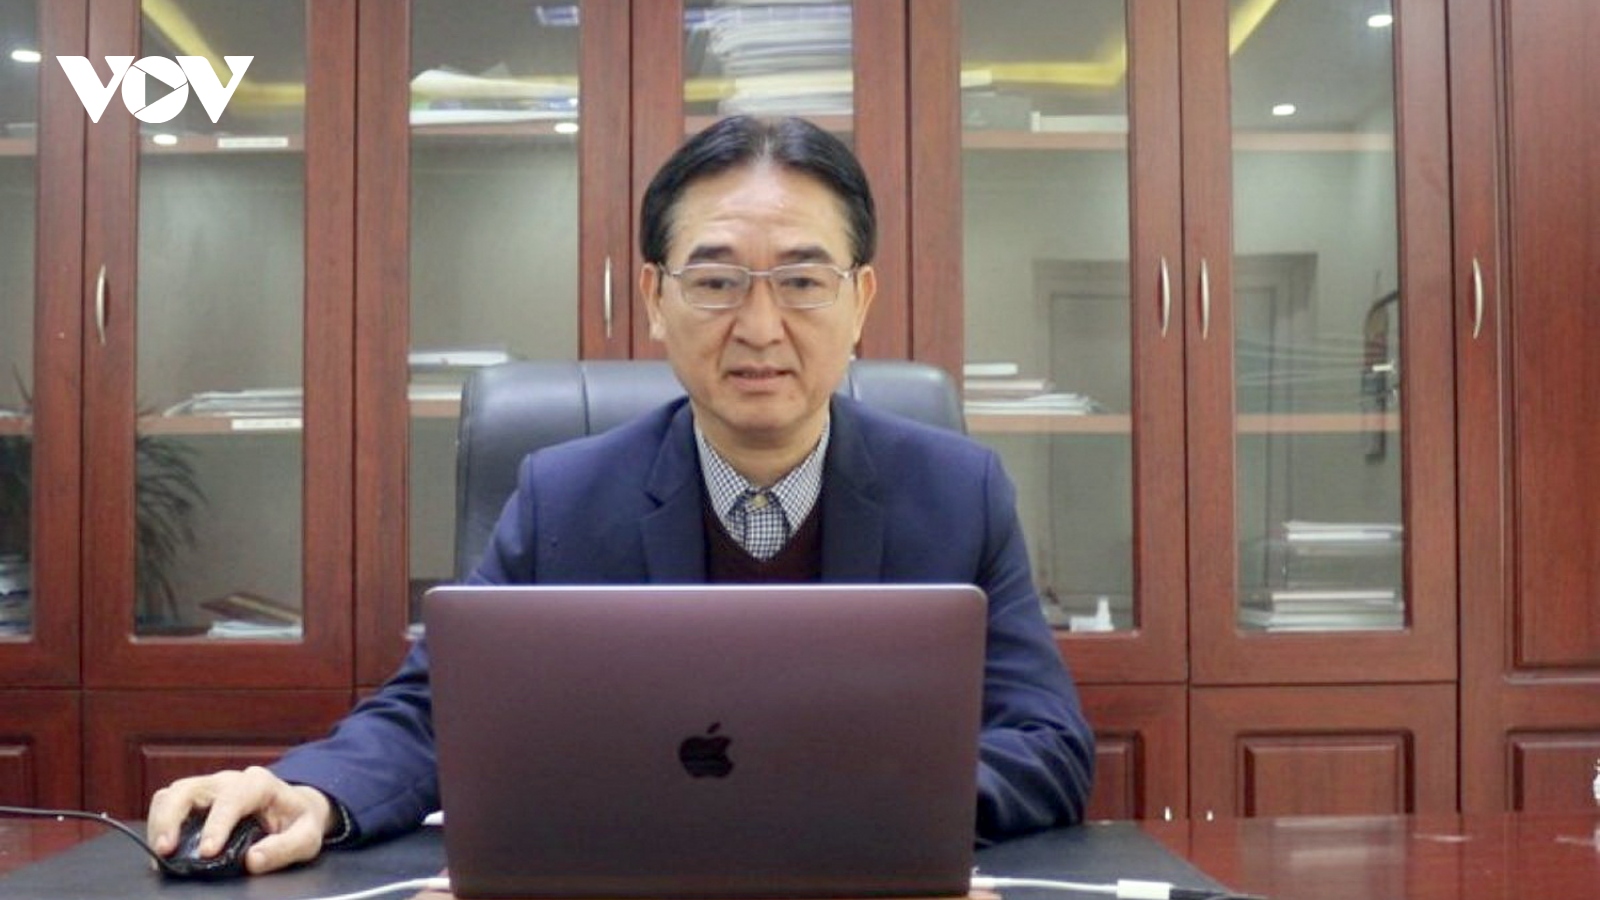 Giám đốc Sở Xây dựng tỉnh Quảng Bình xin nghỉ hưu trước tuổi